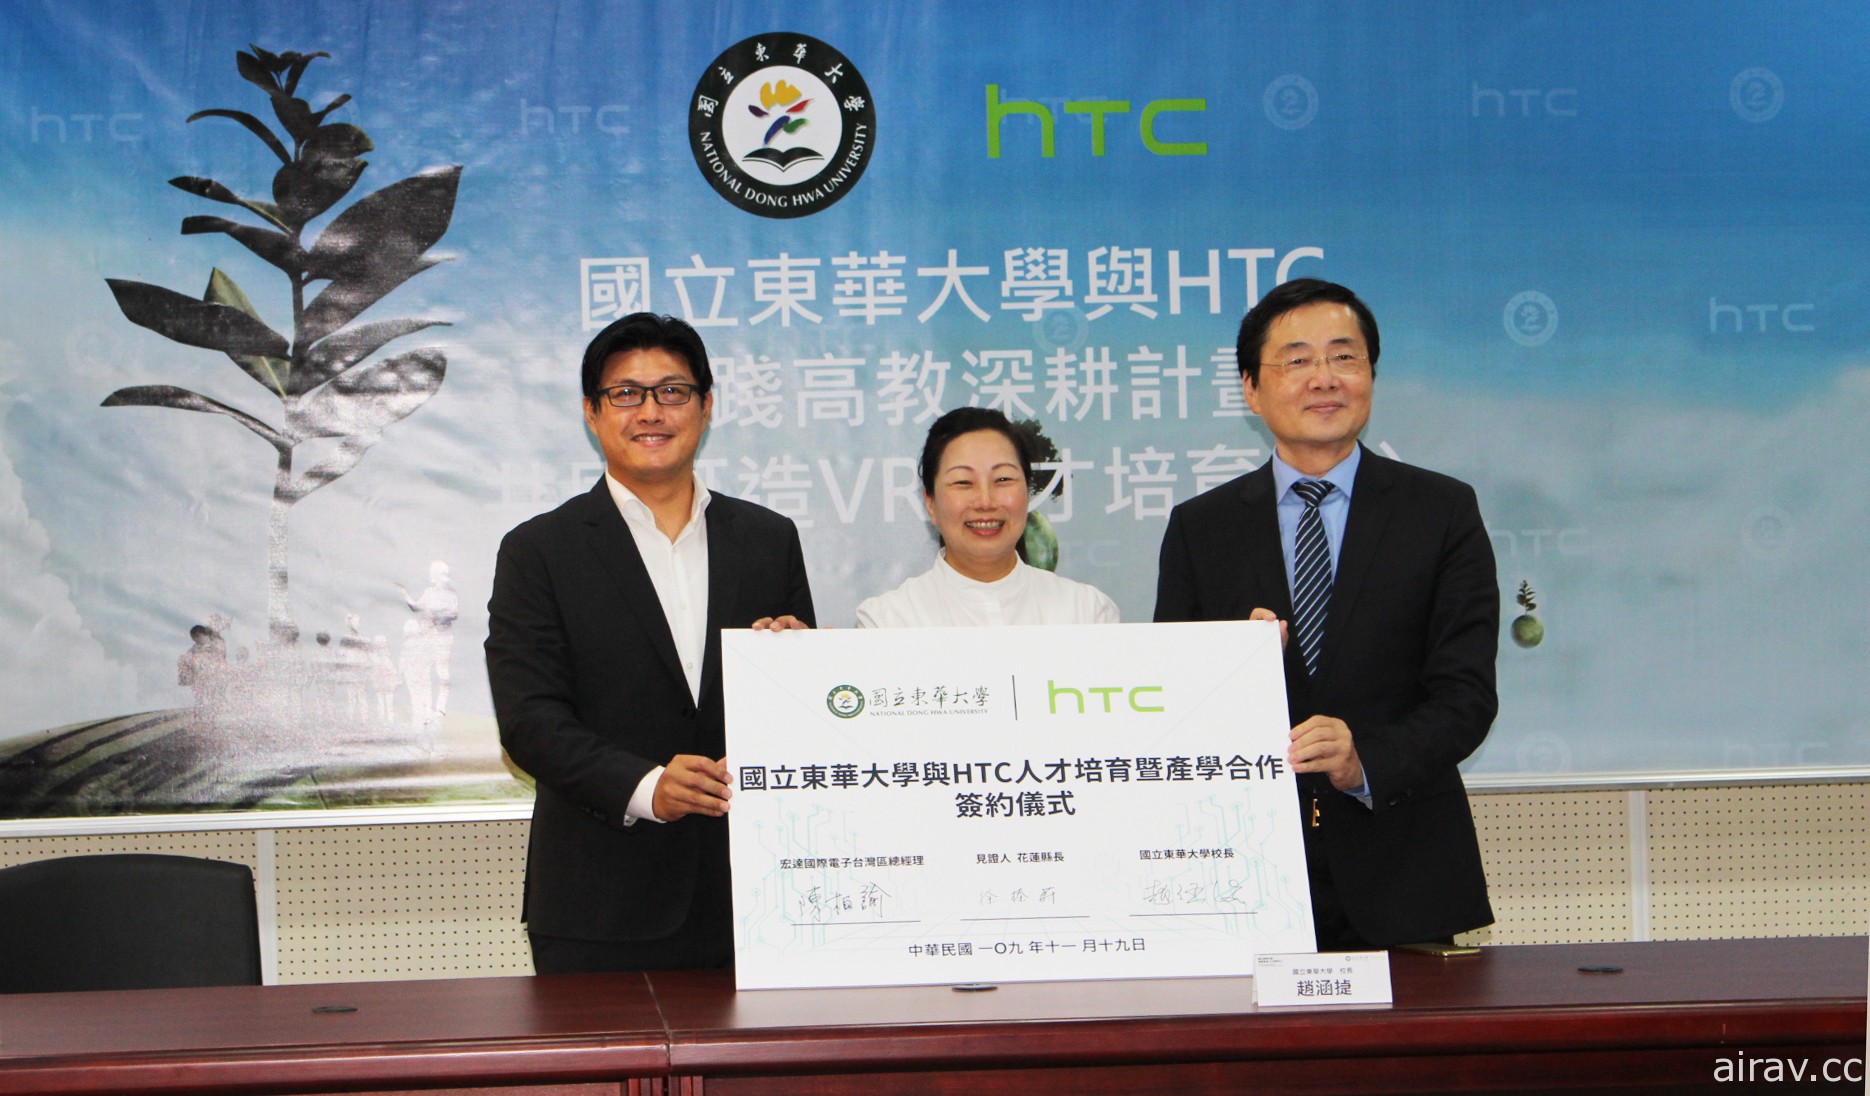 東華大學結盟 HTC 成立東台灣首間 VR 人才培育中心 共同推動高等教育深耕計畫